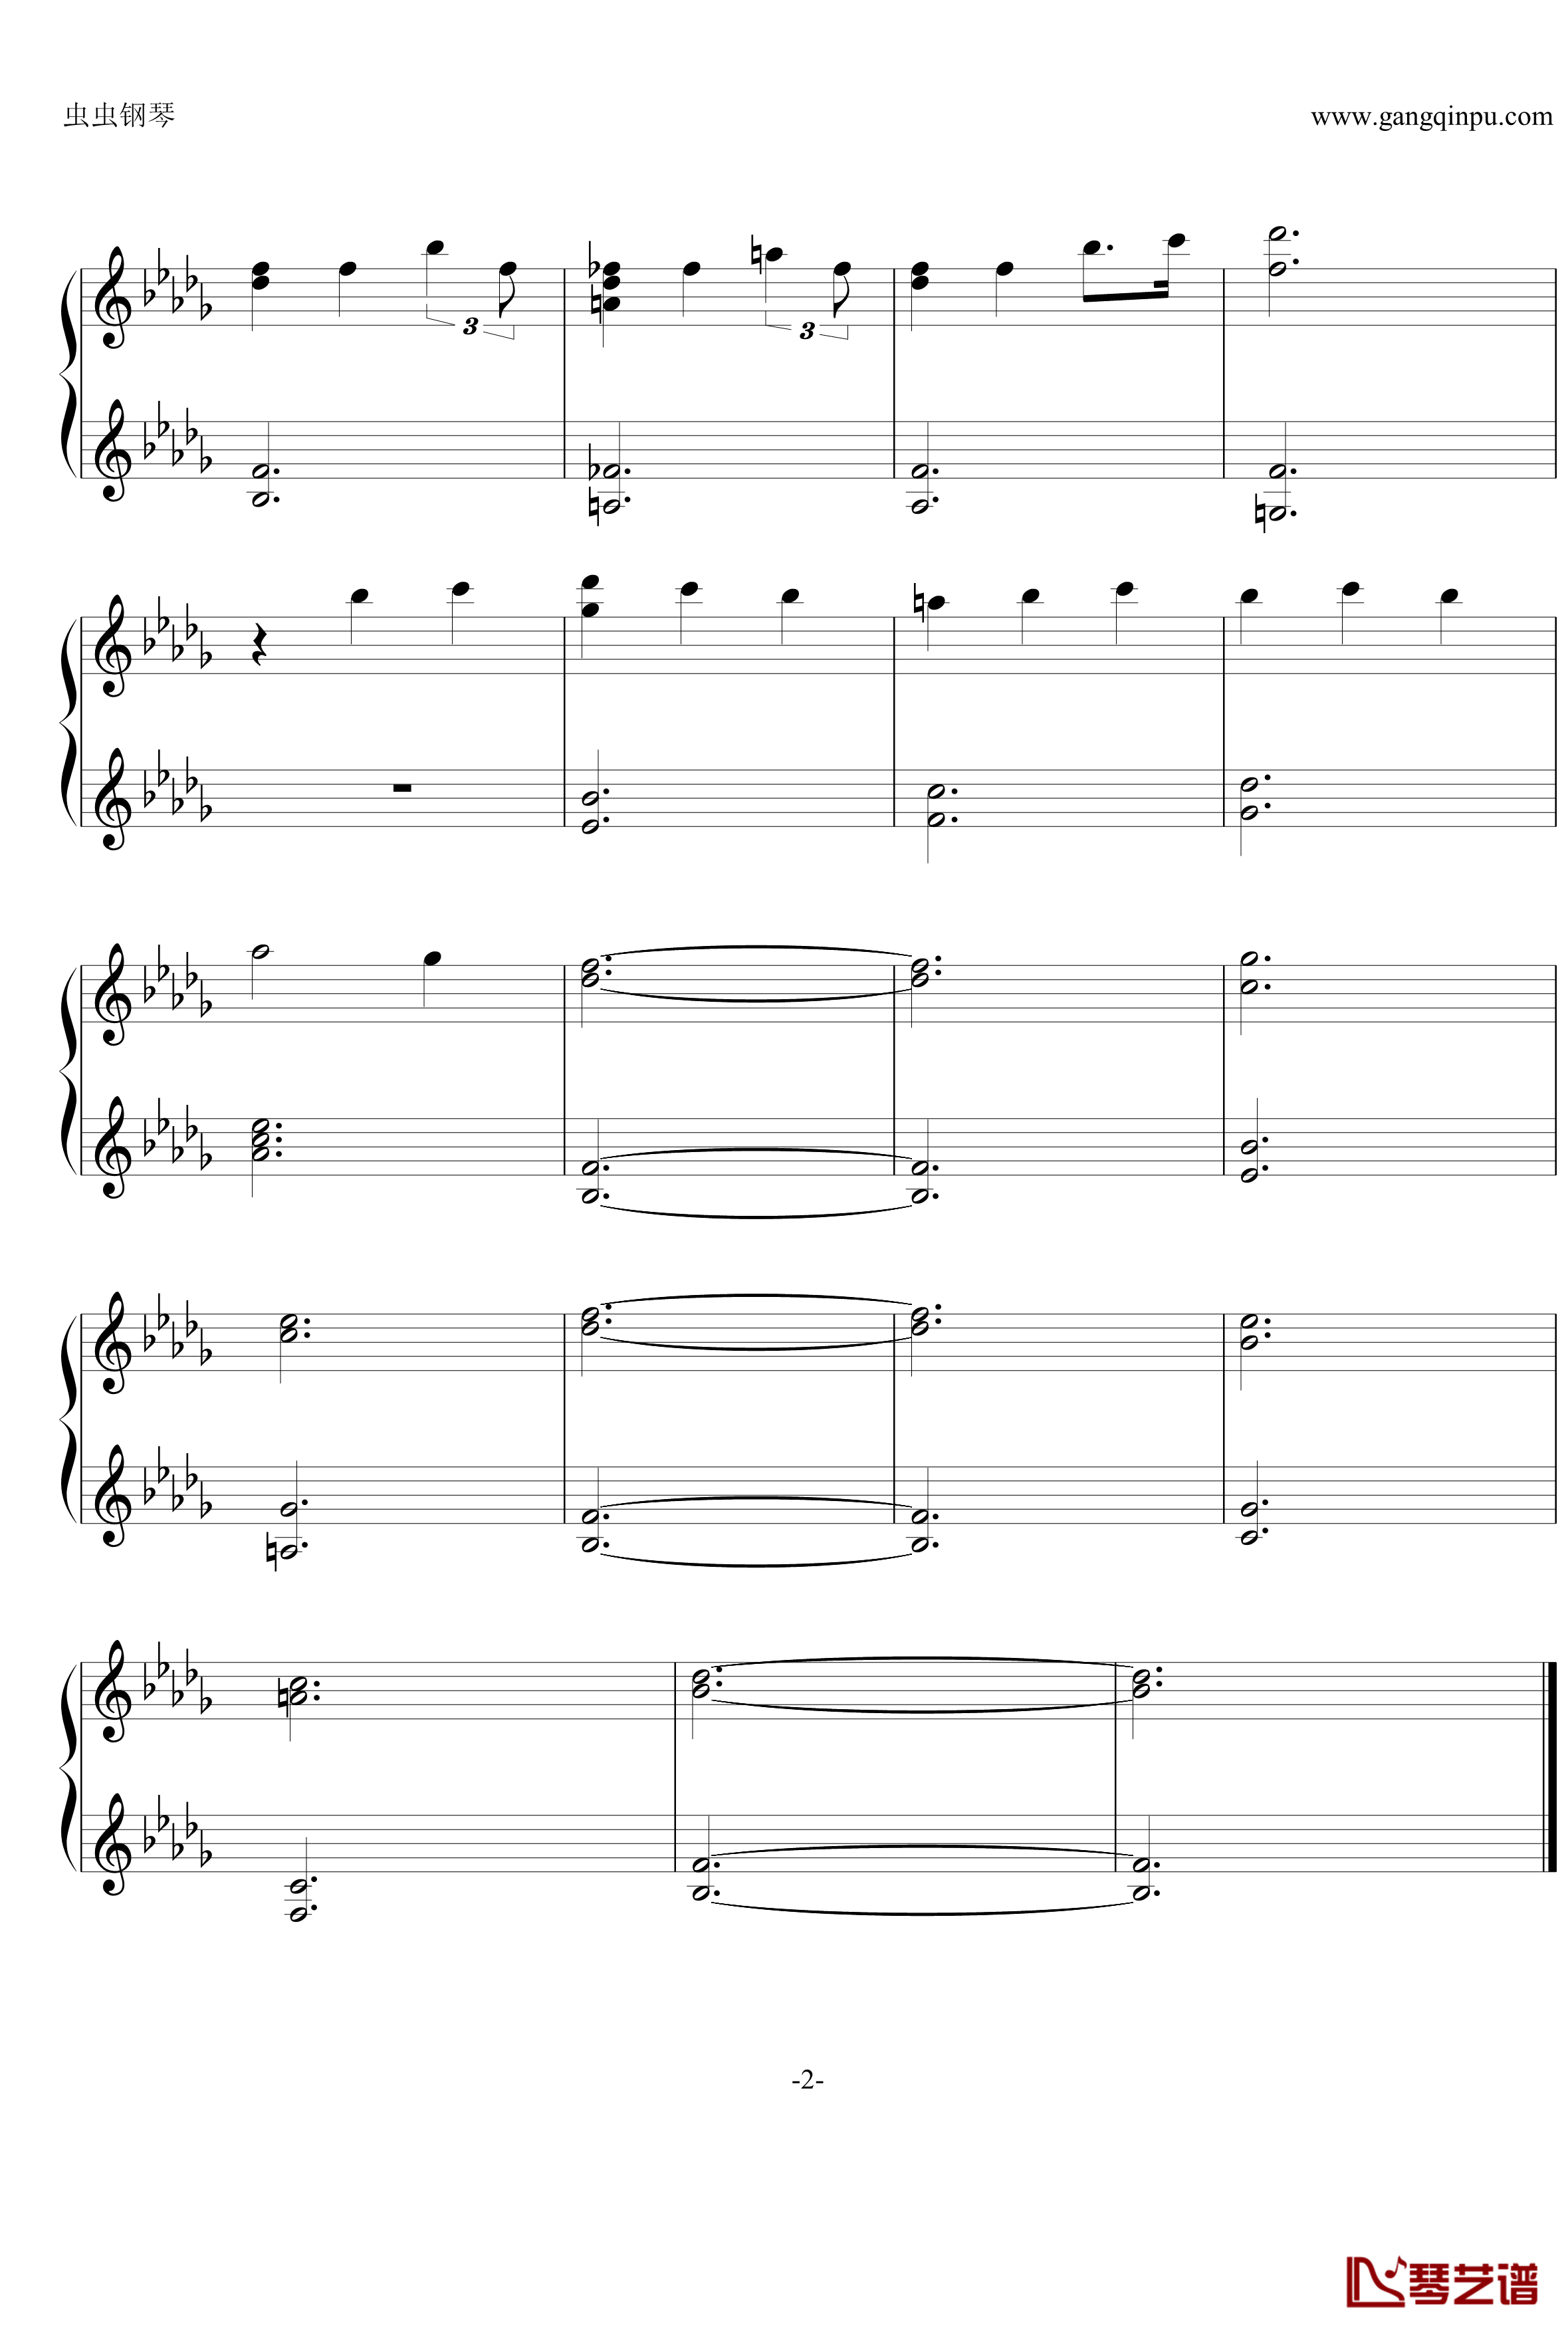 白蔷薇组曲⒈序曲钢琴谱-aqtq3142